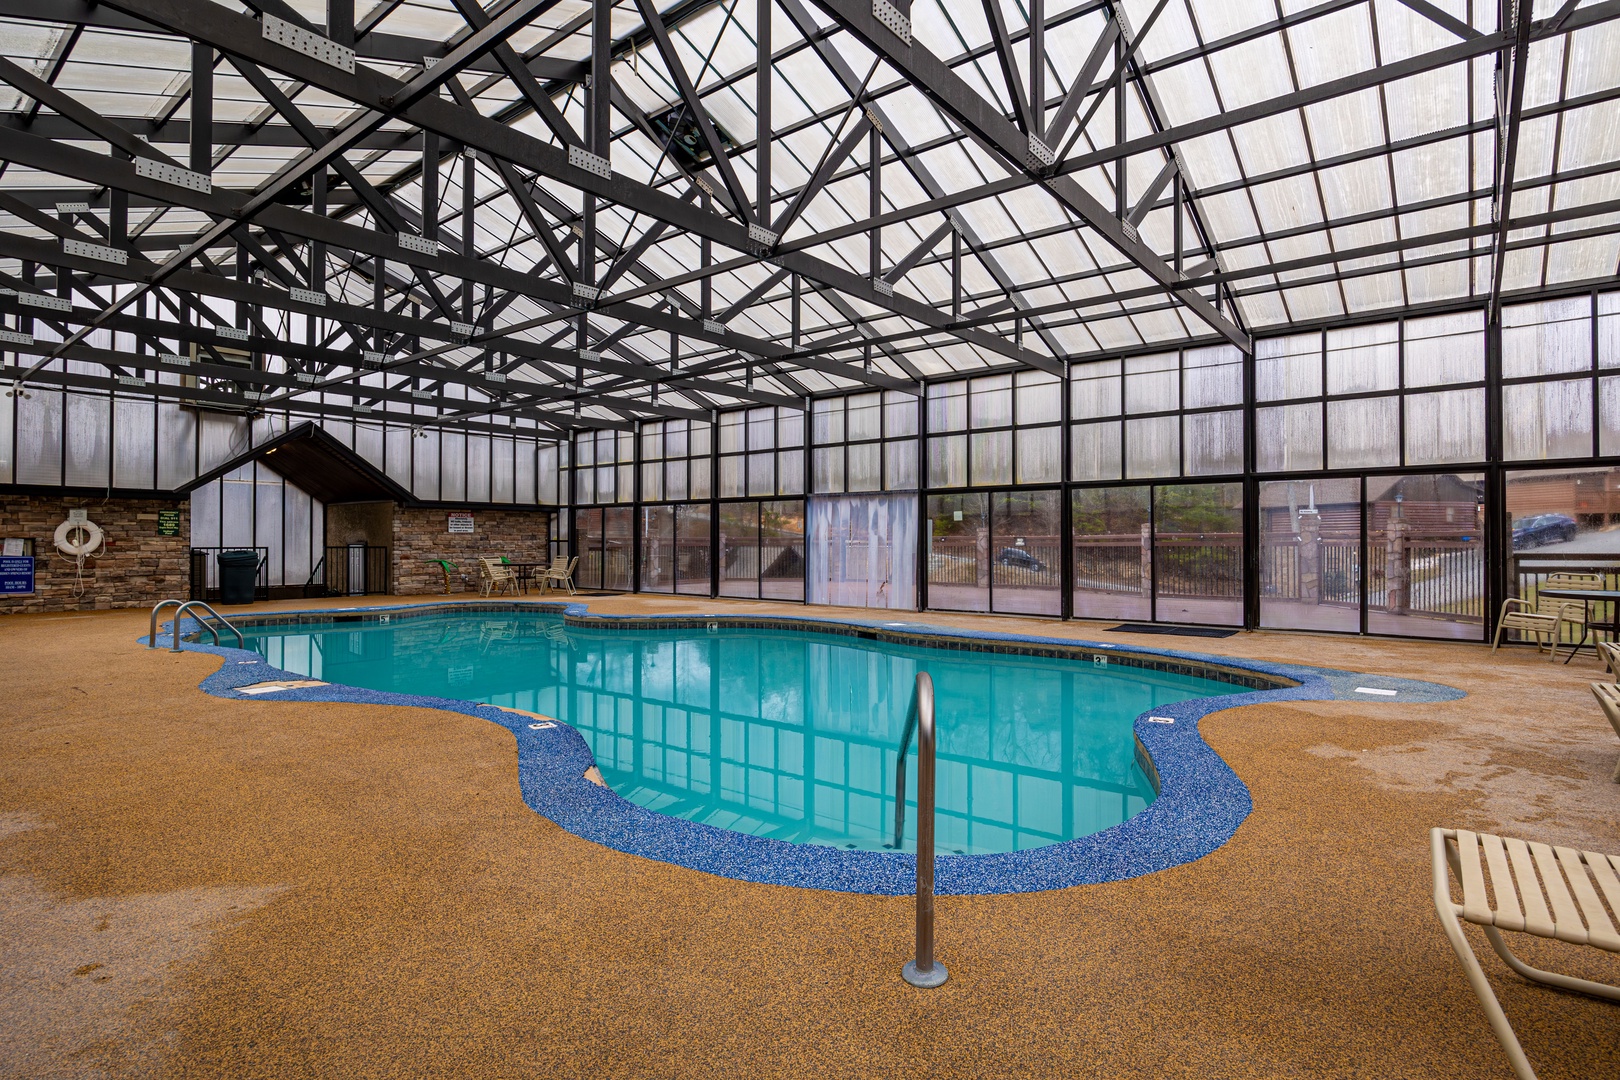 Hidden Springs Resort Indoor Pool